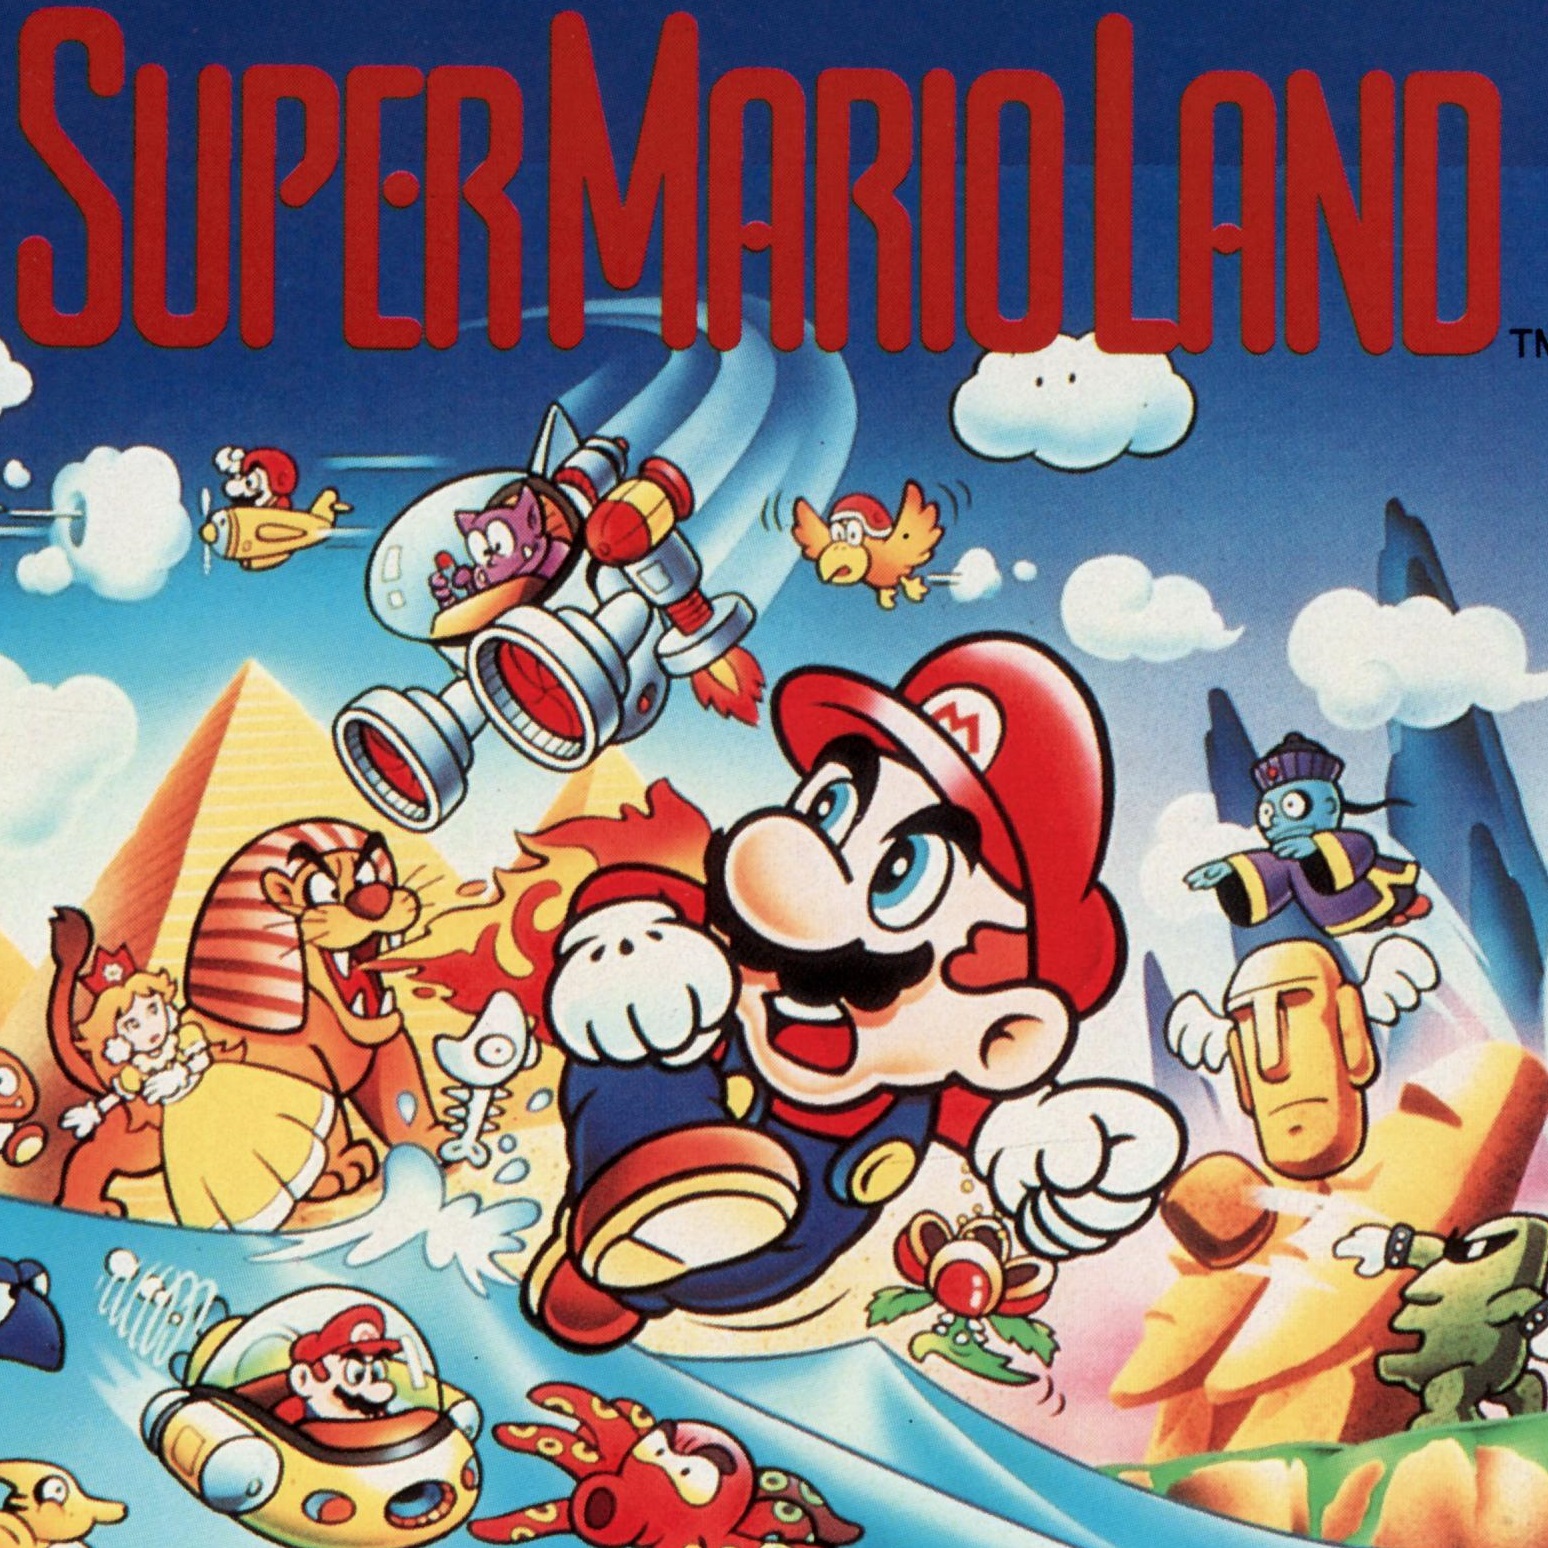 super mario land retro games